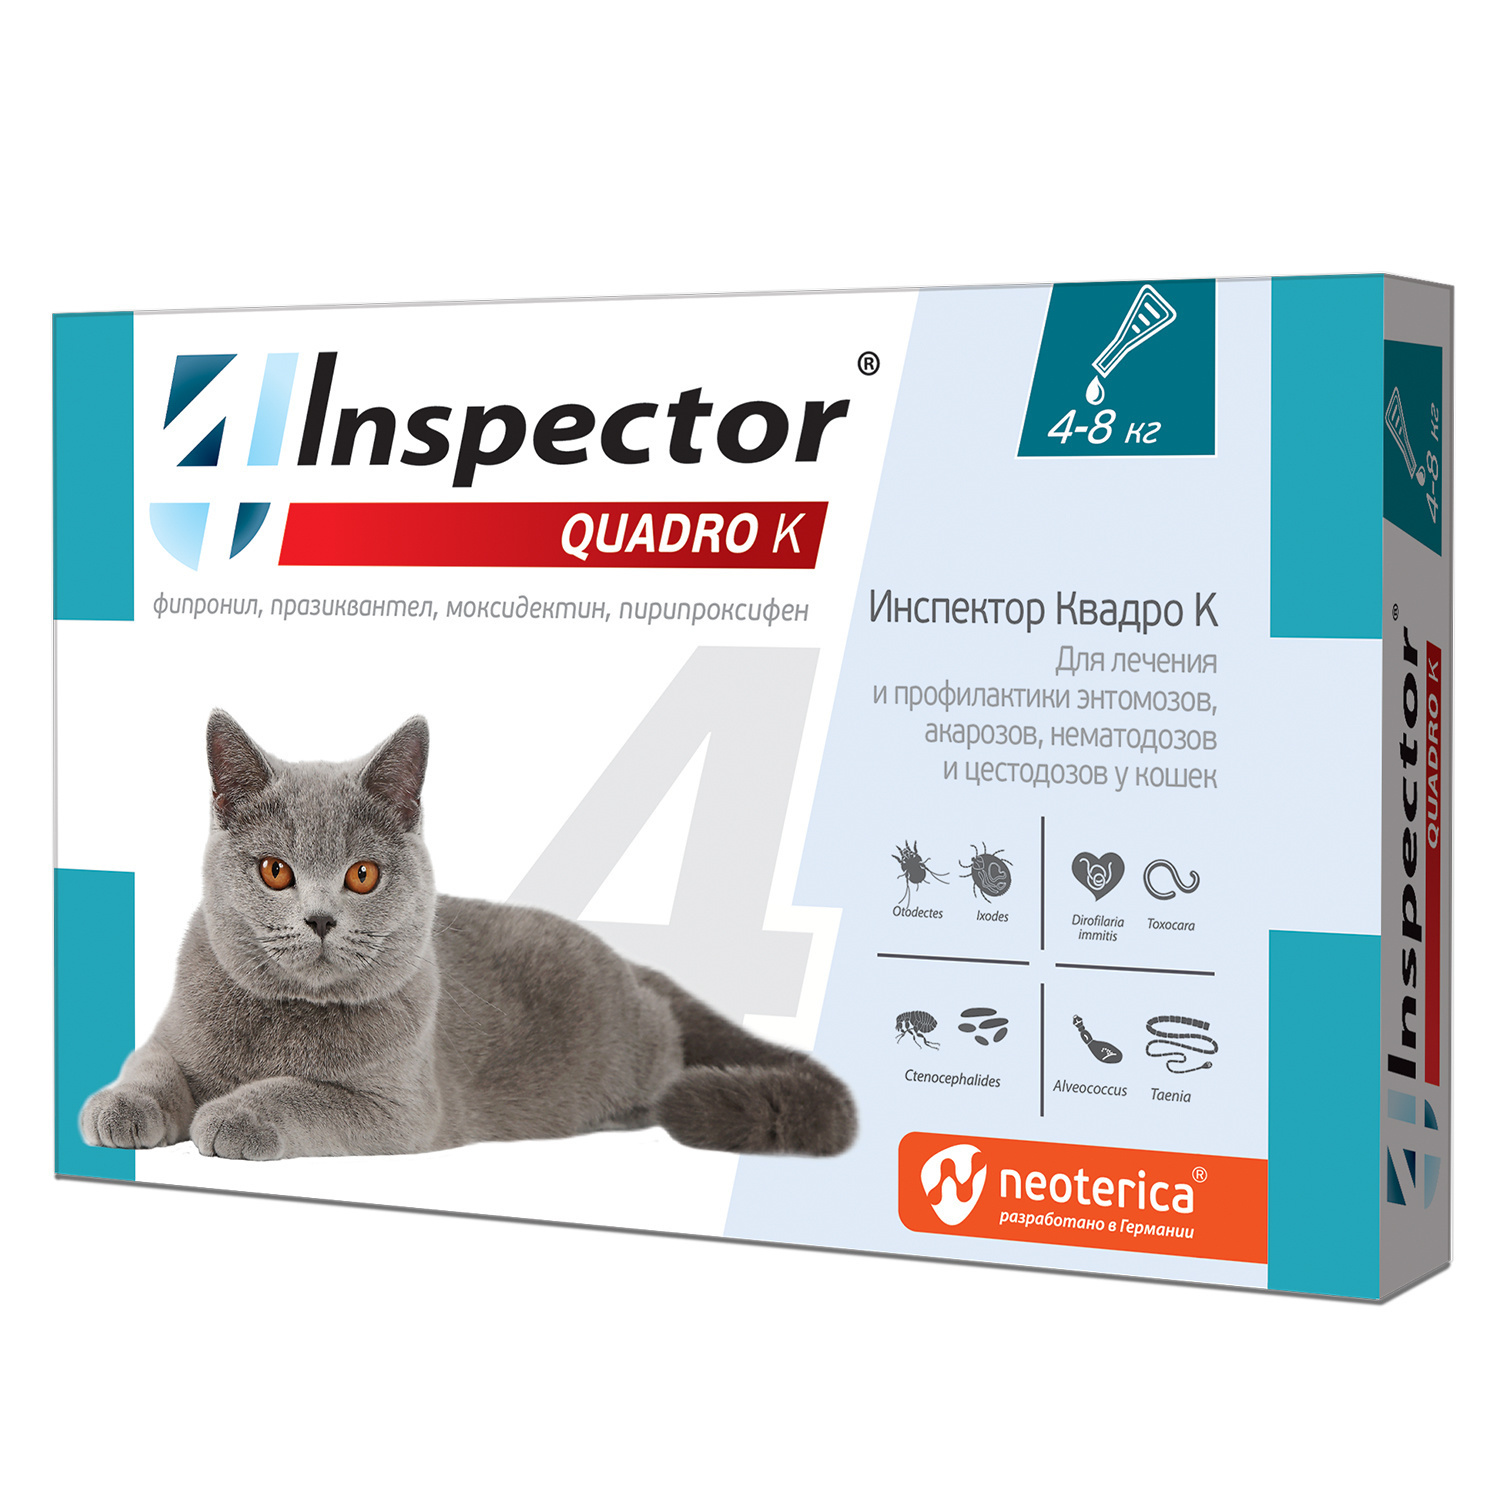 Inspector Inspector quadro капли на холку для кошек 4-8 кг, от глистов, насекомых, клещей (180 г)